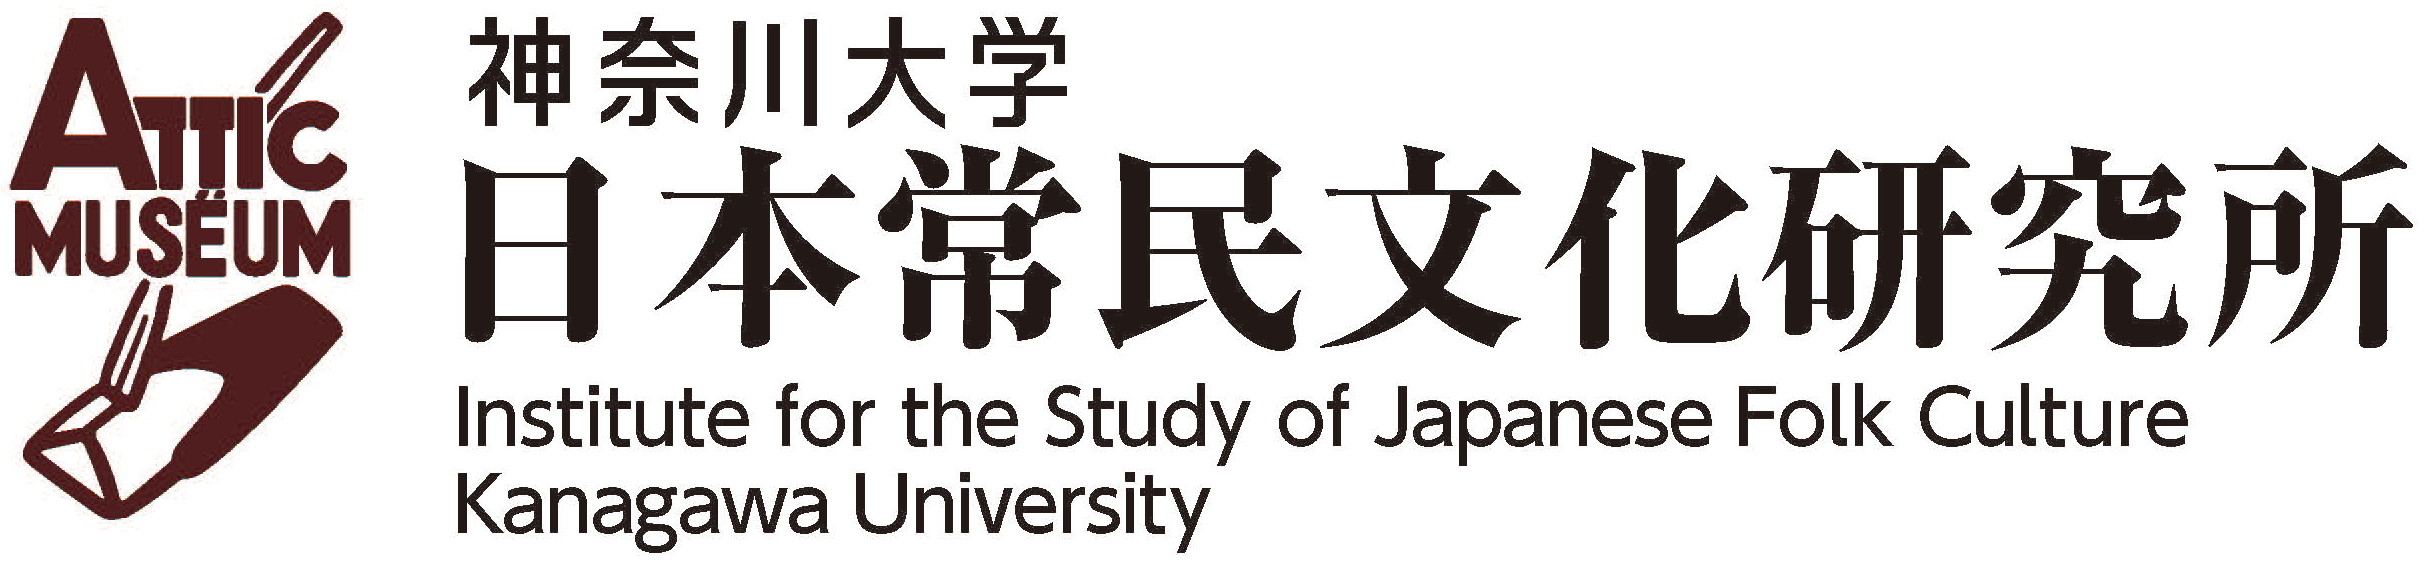 神奈川大学日本常民文化研究所